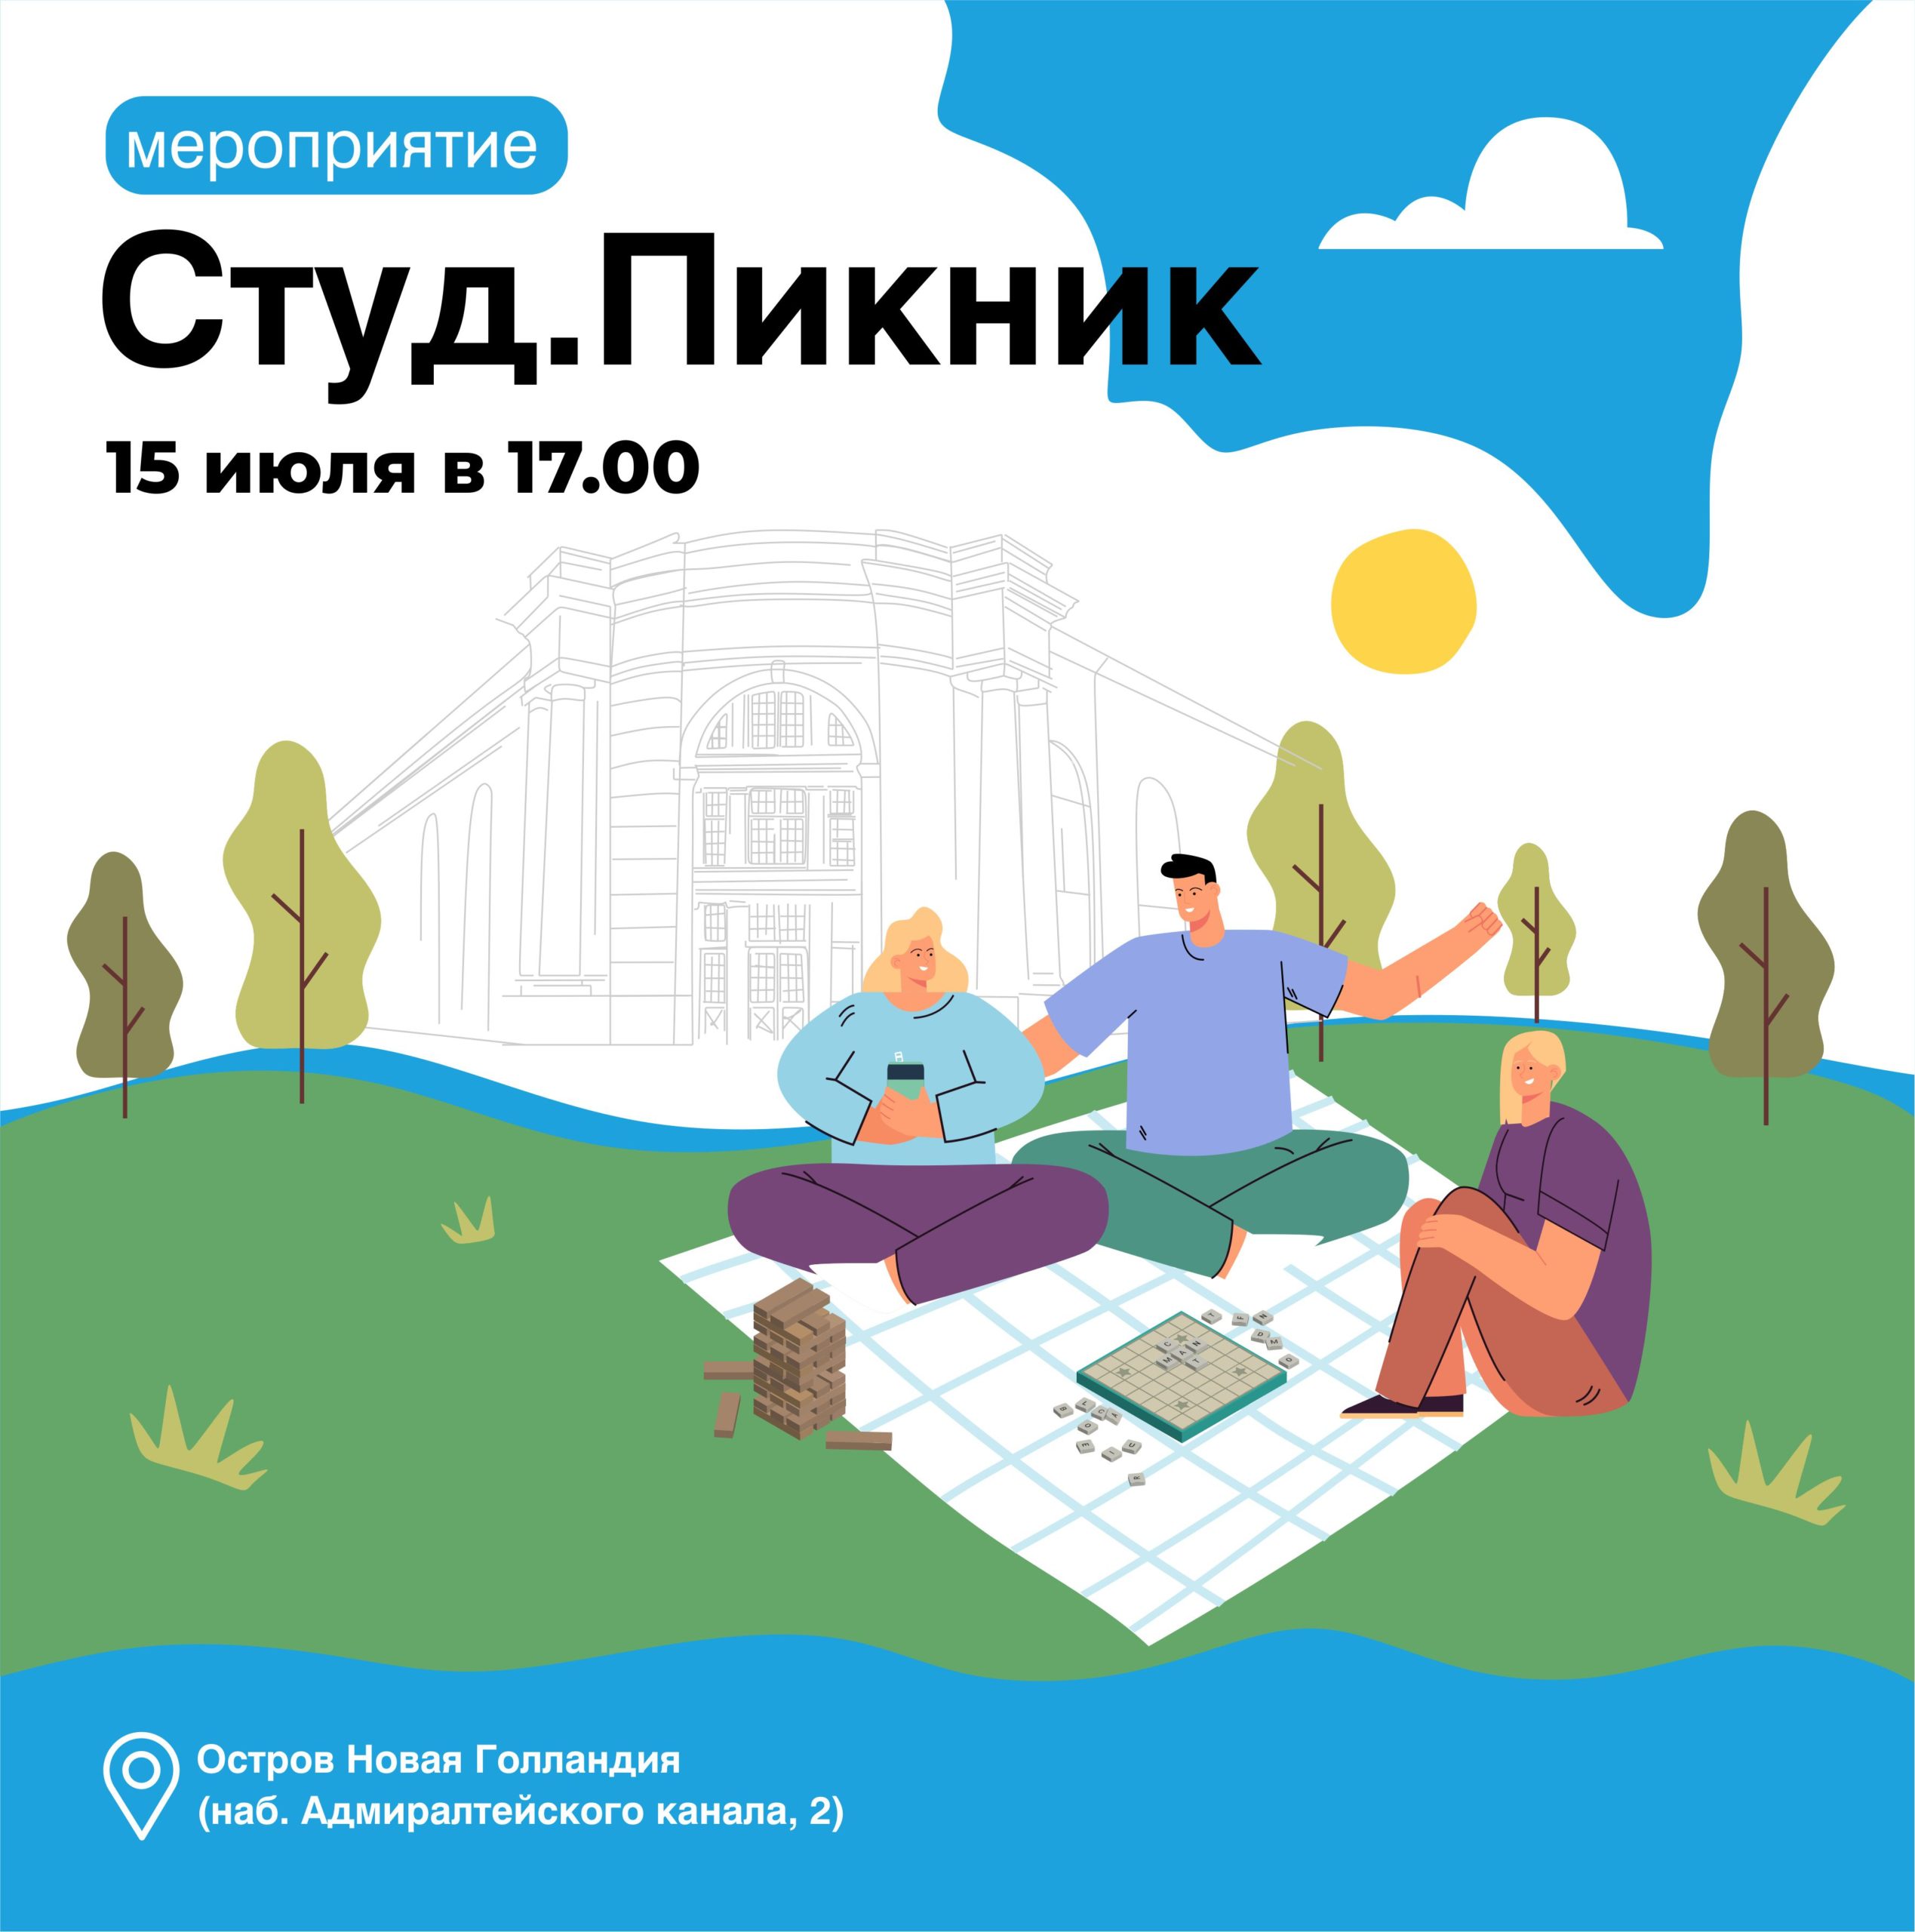 Участники всероссийской студвесны из Петербурга проведут интерактивный пикник